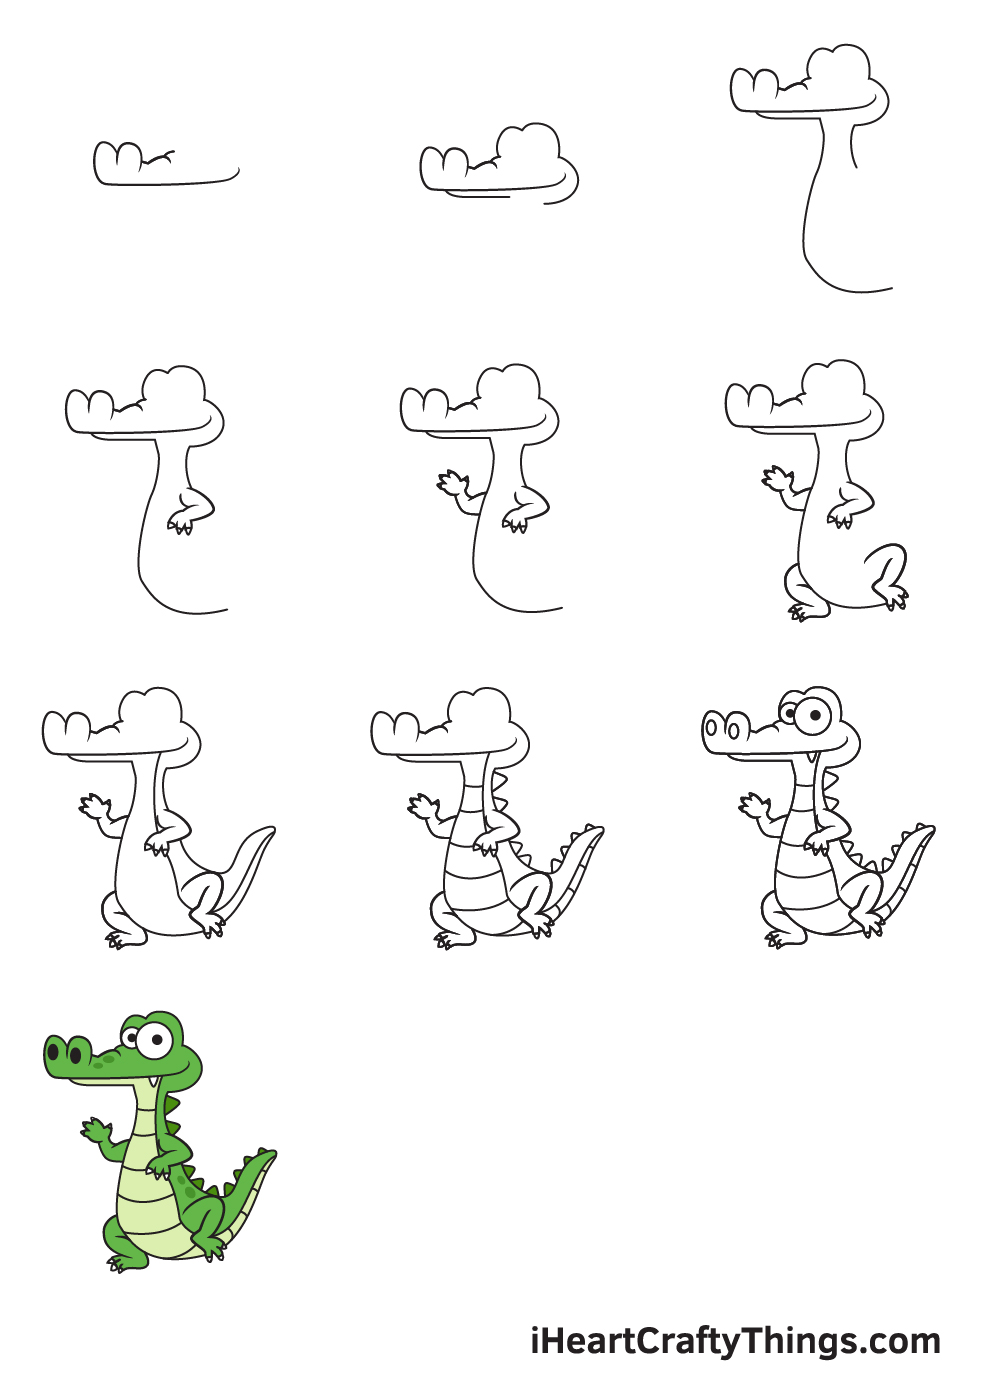 Hướng dẫn cách vẽ con cá sấu đơn giản với 9 bước cơ bản  Thiết kế nhà đẹp